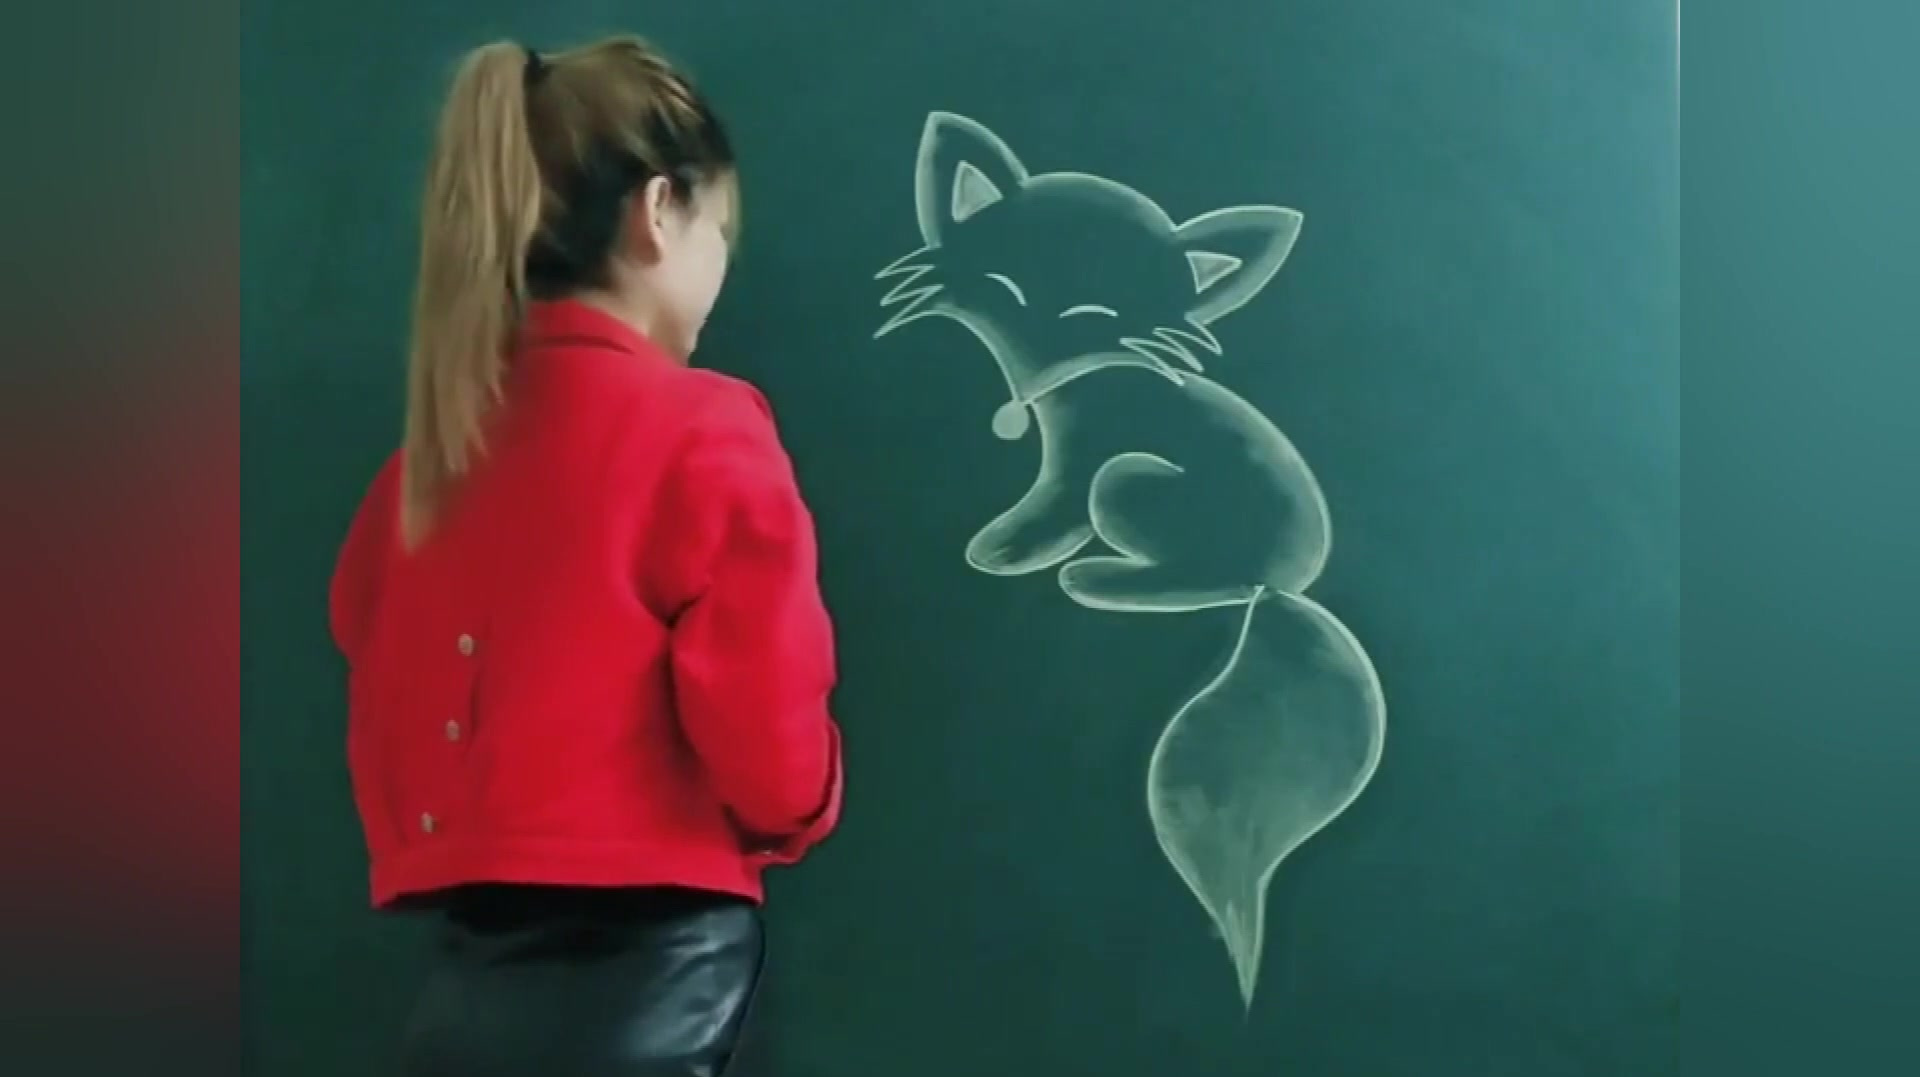 1狐狸简笔画:首先画出狐狸的脑袋,耳朵和嘴巴,再画出狐狸的眼睛,然后